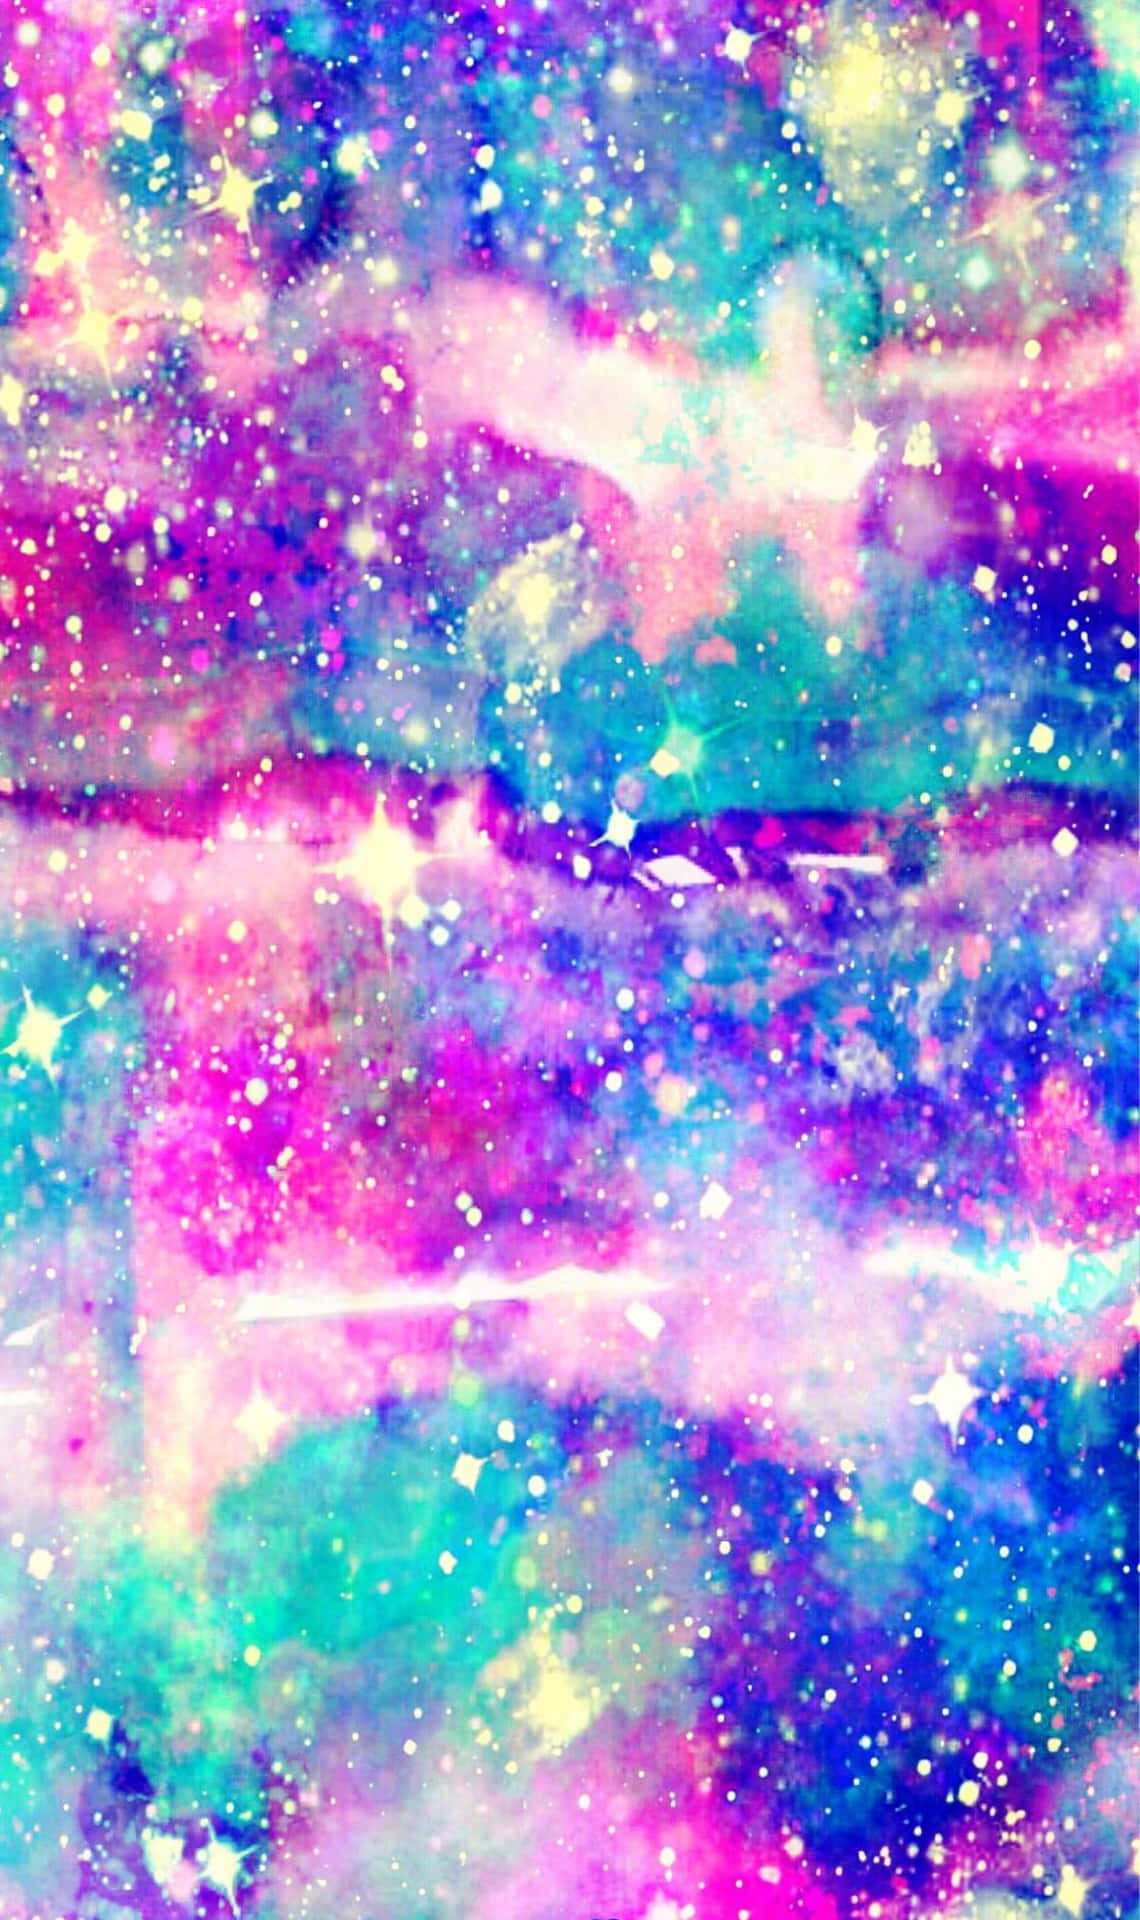 Snyggtie Dye Galaxy-konst Wallpaper